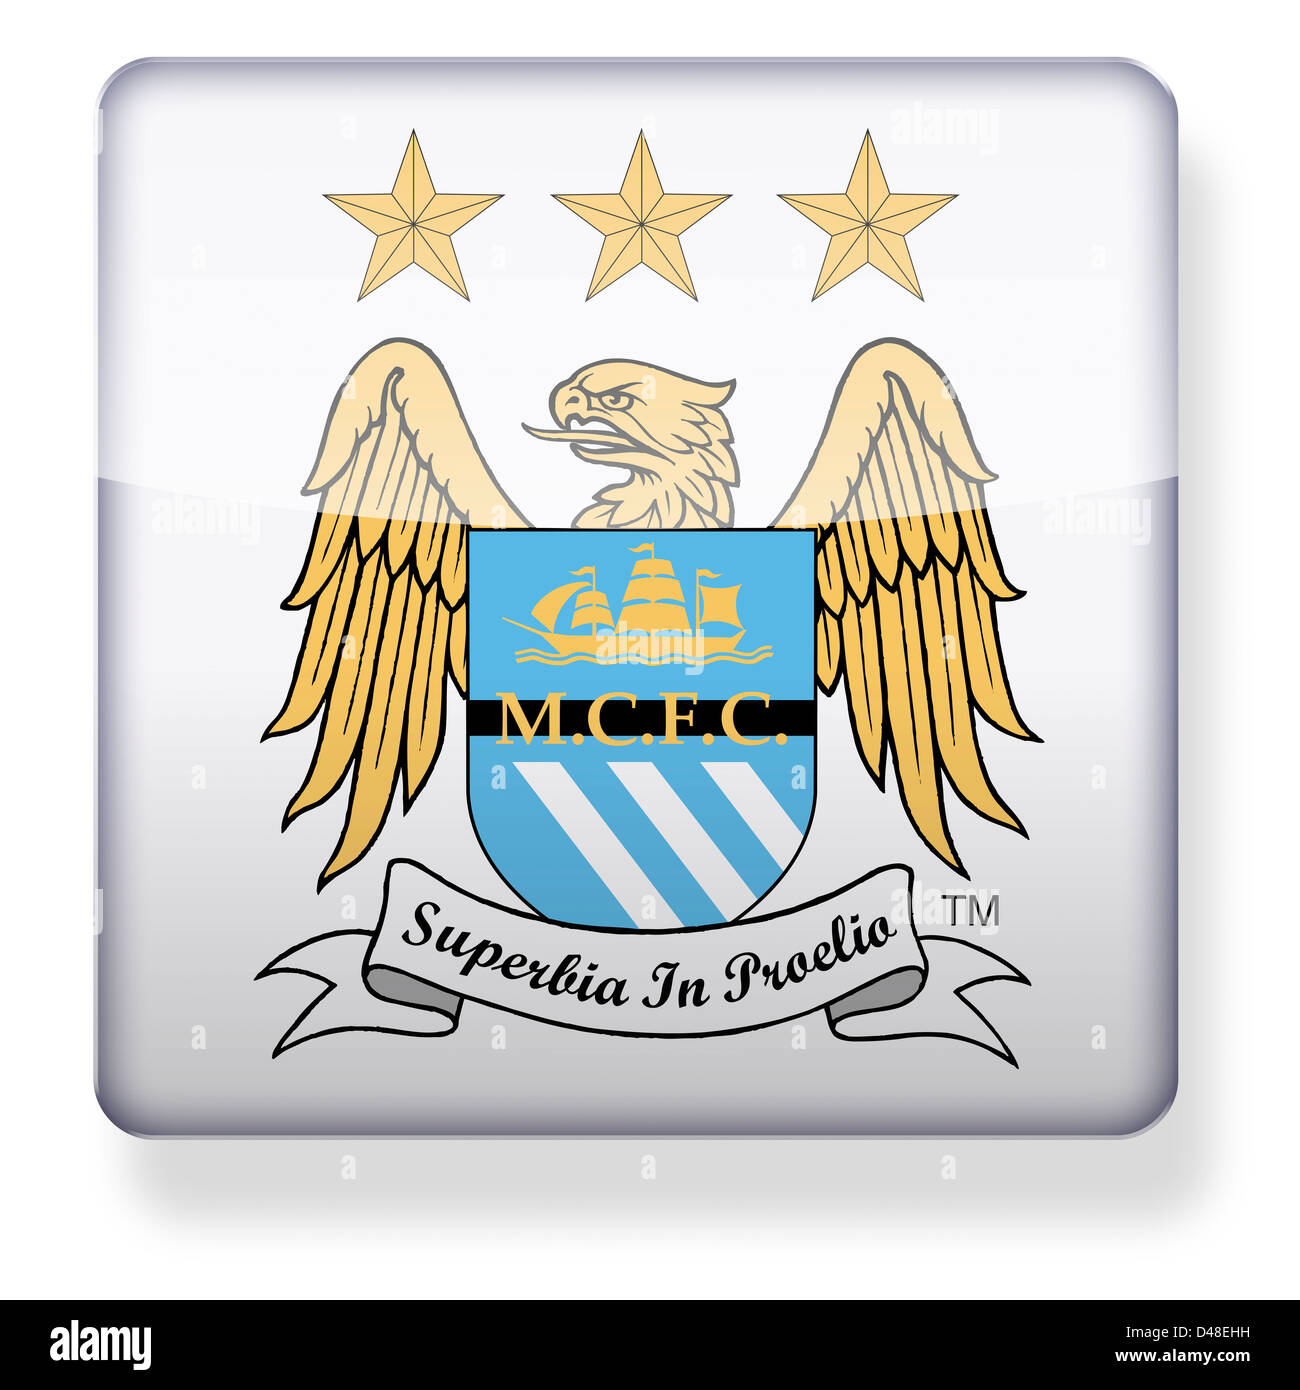 Manchester City Football club logo comme une icône de l'application. Chemin de détourage inclus. Banque D'Images